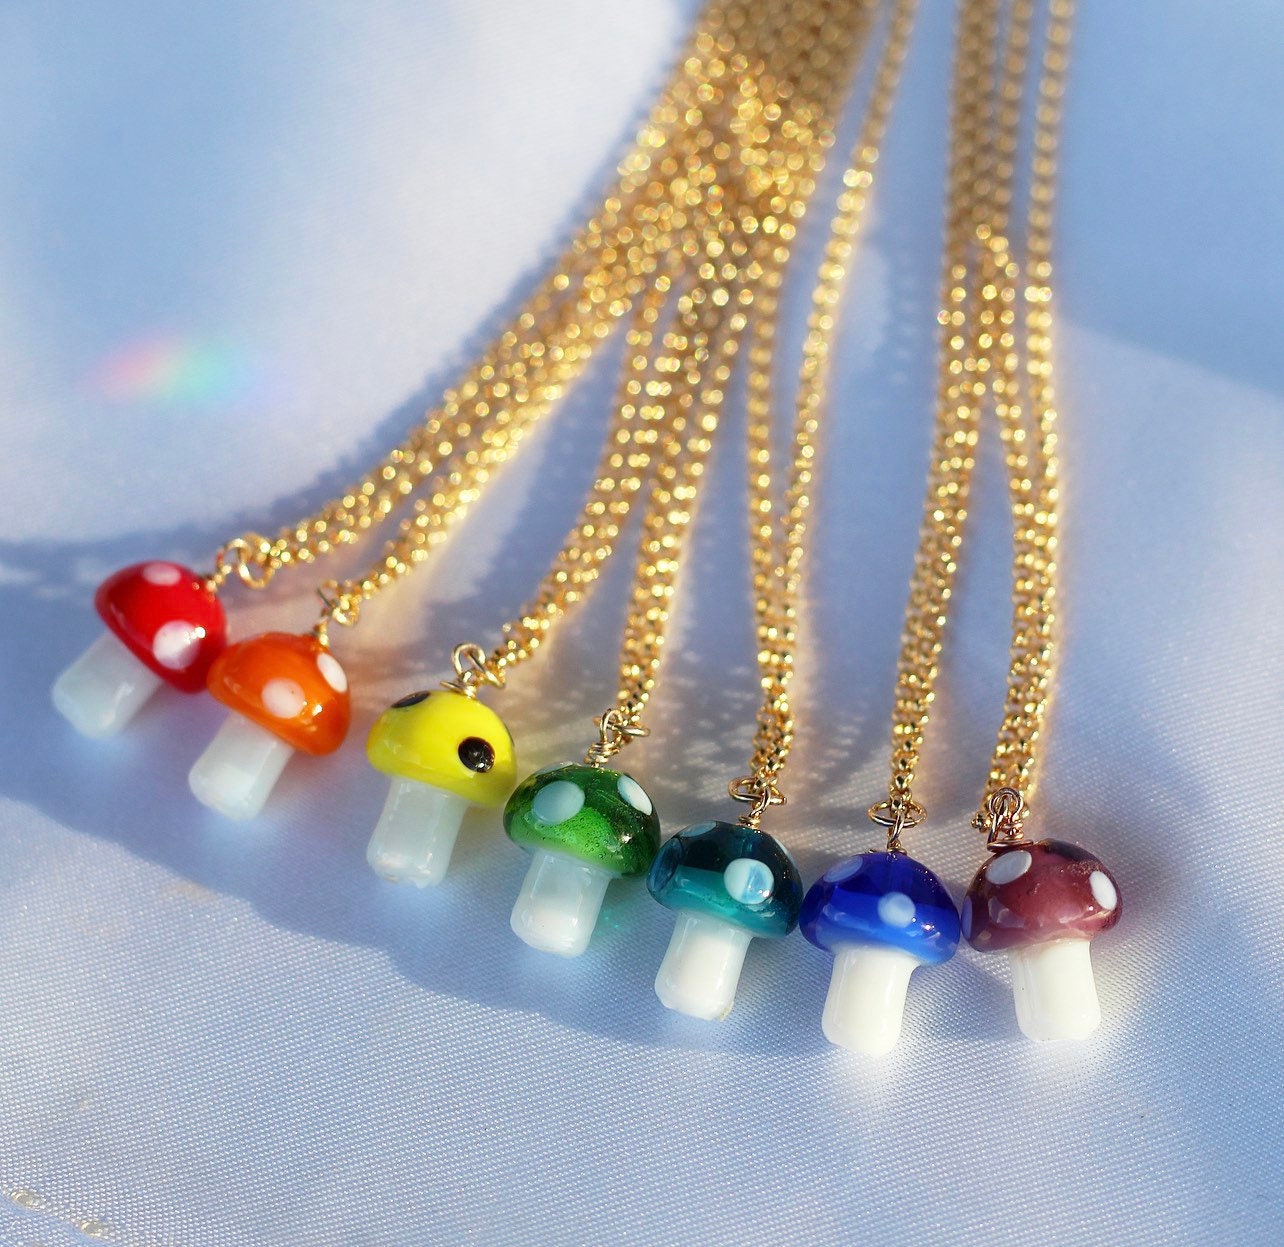 Rainbow Mushroom Necklace, Mini Mushroom Gift, Mushroom Gift for Her, Glass Mushroom Necklace, Magic Mushroom Necklace